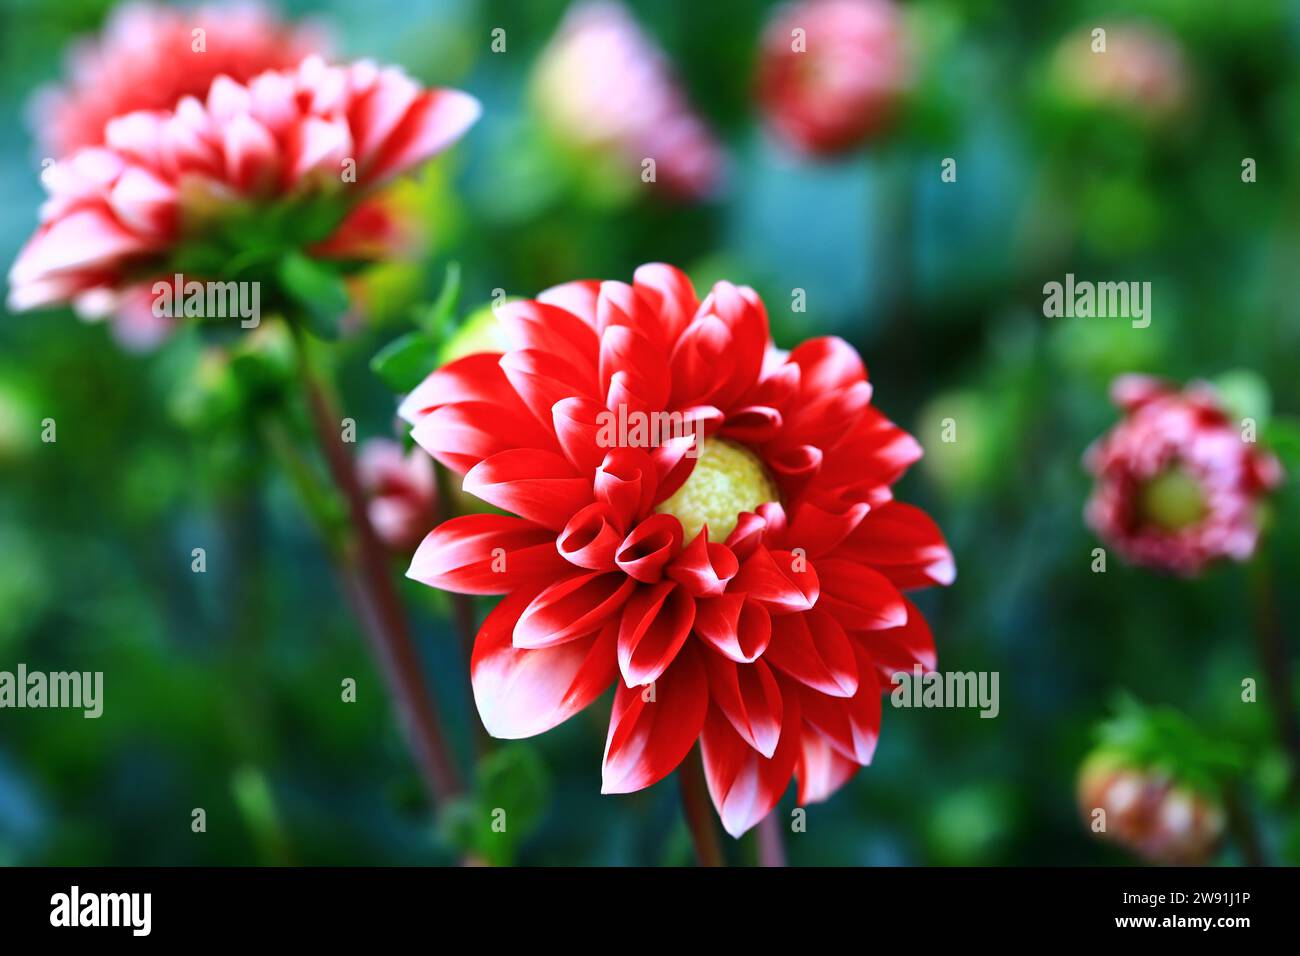 Fioritura di fiori Dahlia colorati, primo piano di fiori rossi con fiori Dahlia bianchi che fioriscono nel giardino Foto Stock